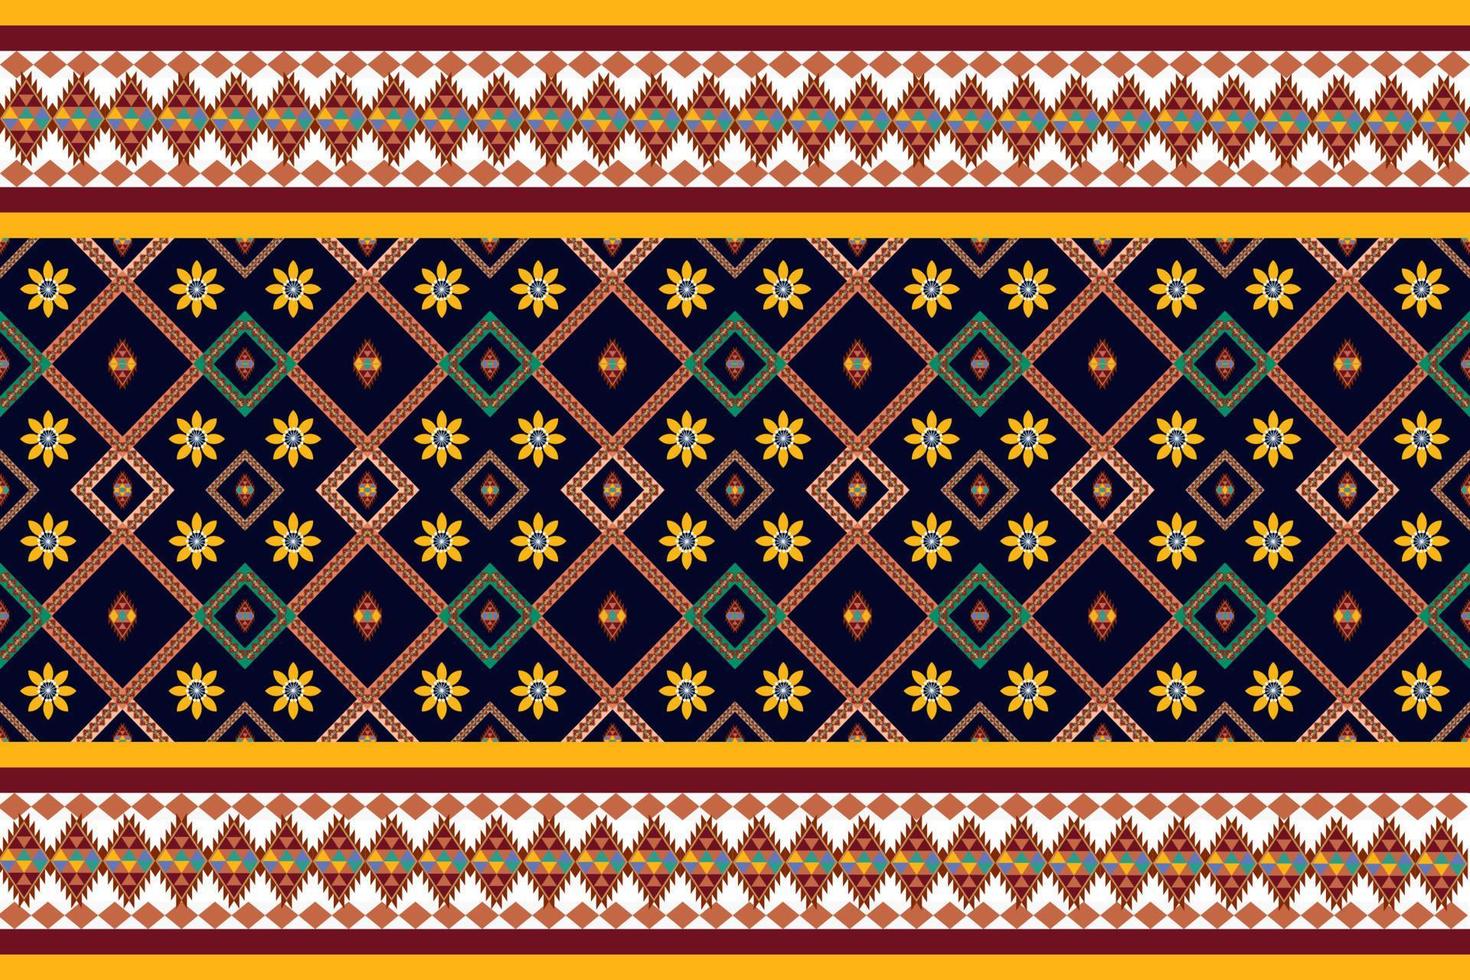 vetor de padrão sem emenda geométrico étnico. padrão de motivo asteca americano árabe africano. elementos vetoriais projetados para fundo, papel de parede, impressão, embrulho, azulejo, padrão de tecido. padrão de vetor.